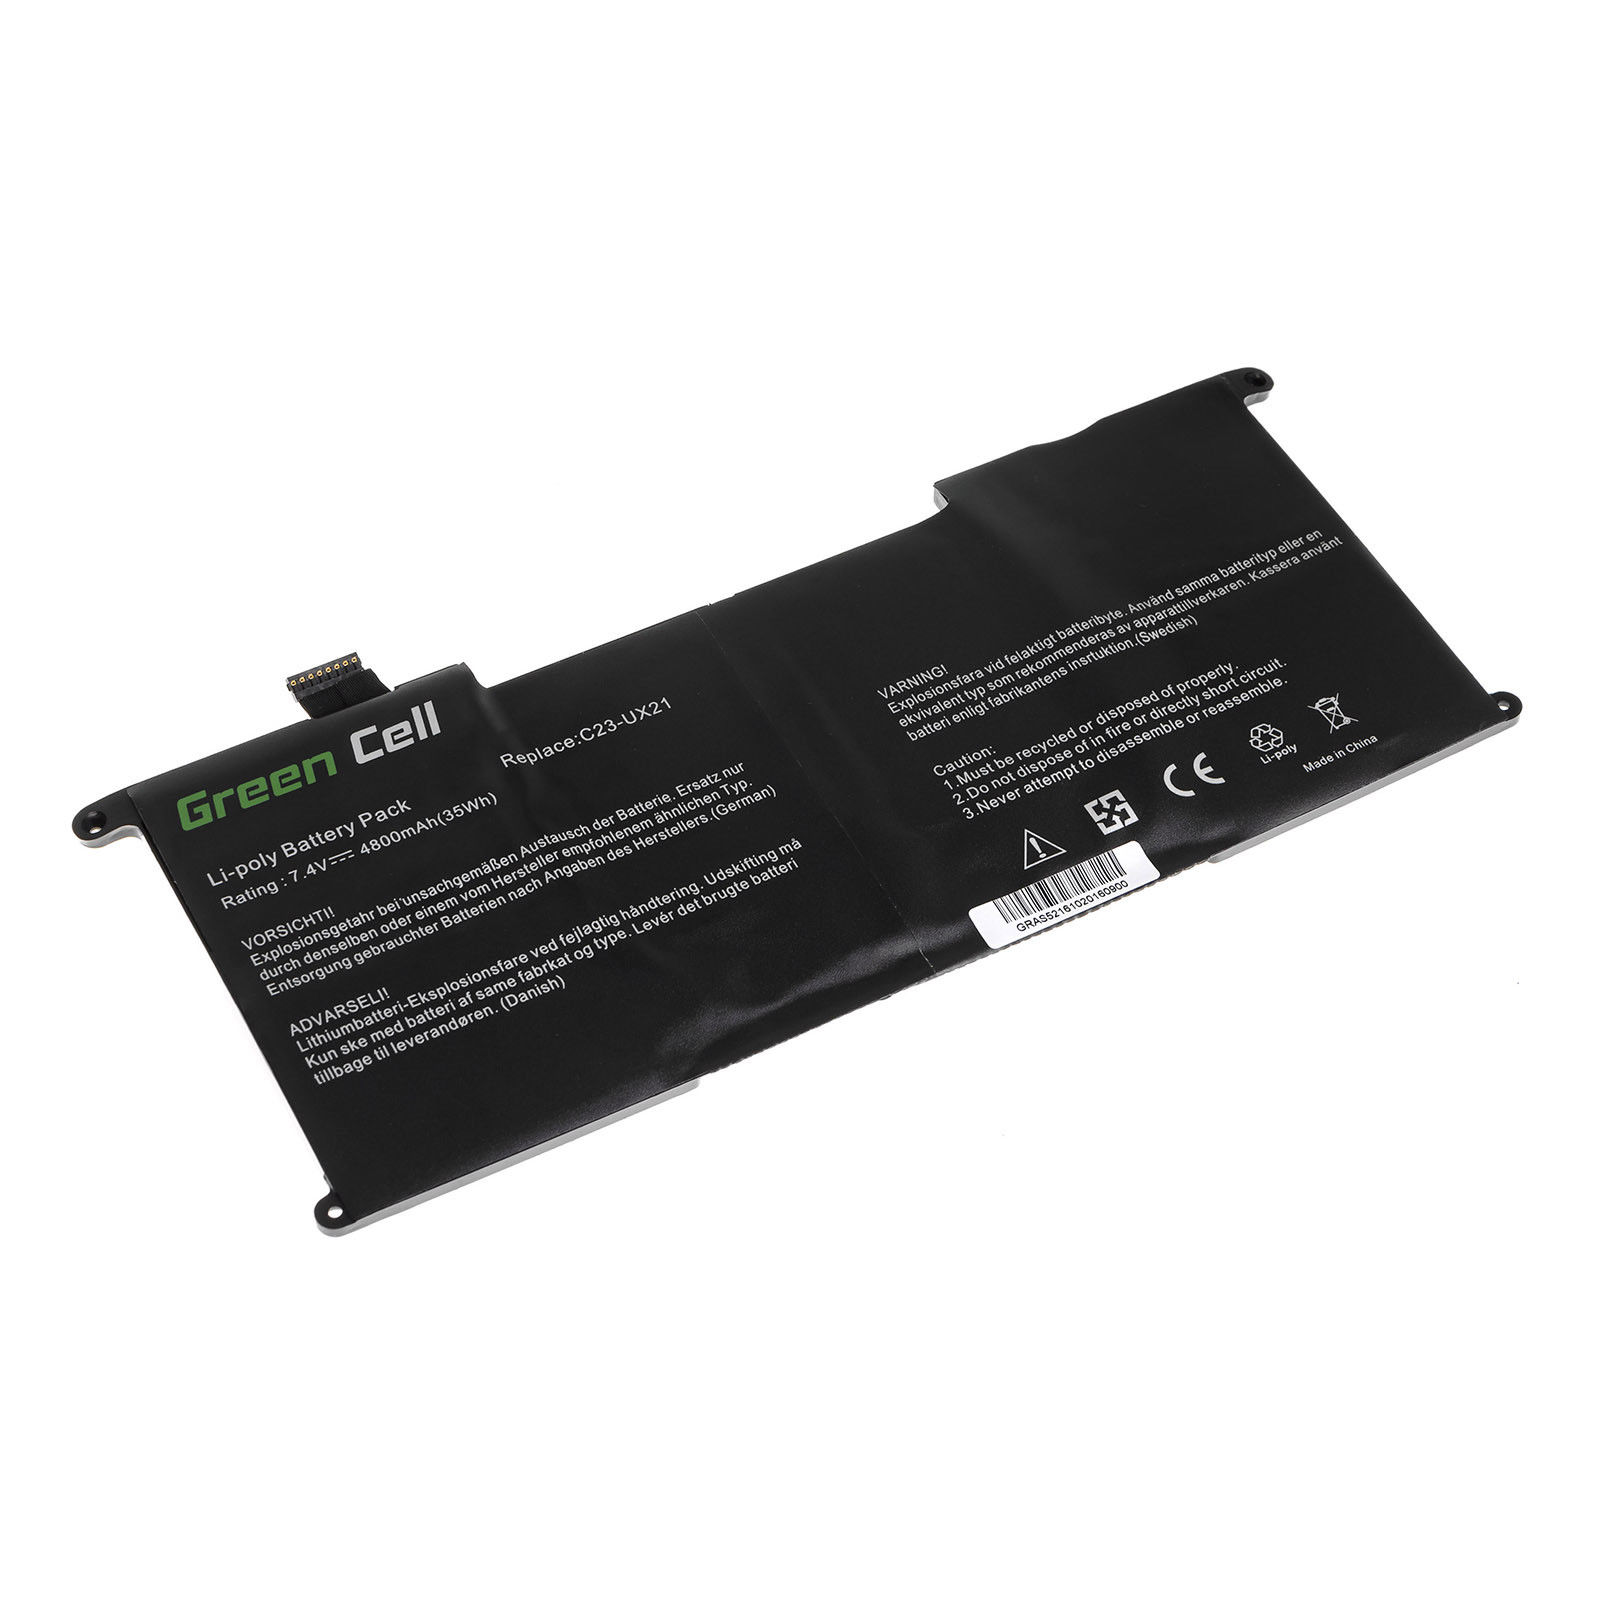 Asus ZenBook UX21A-1AK3 UX21A-K1004H UX21A-K1009H kompatibelt batterier - Trykk på bildet for å lukke